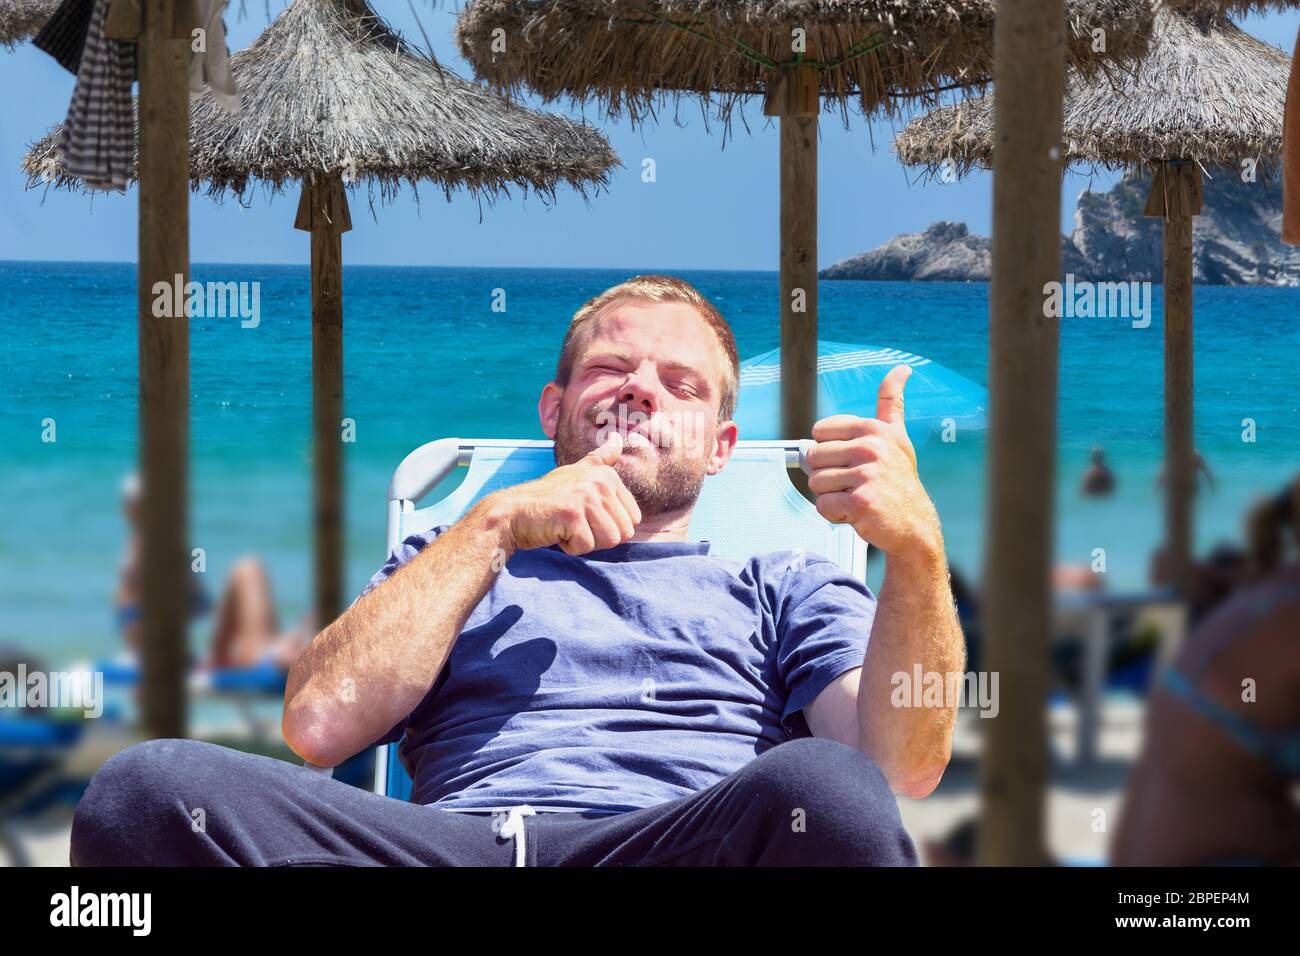 Strandleben, Urlauber am Strand. Focus auf Mann im Liegestuhl. Hintergrund  gewünschte unschärfe. Stock Photo